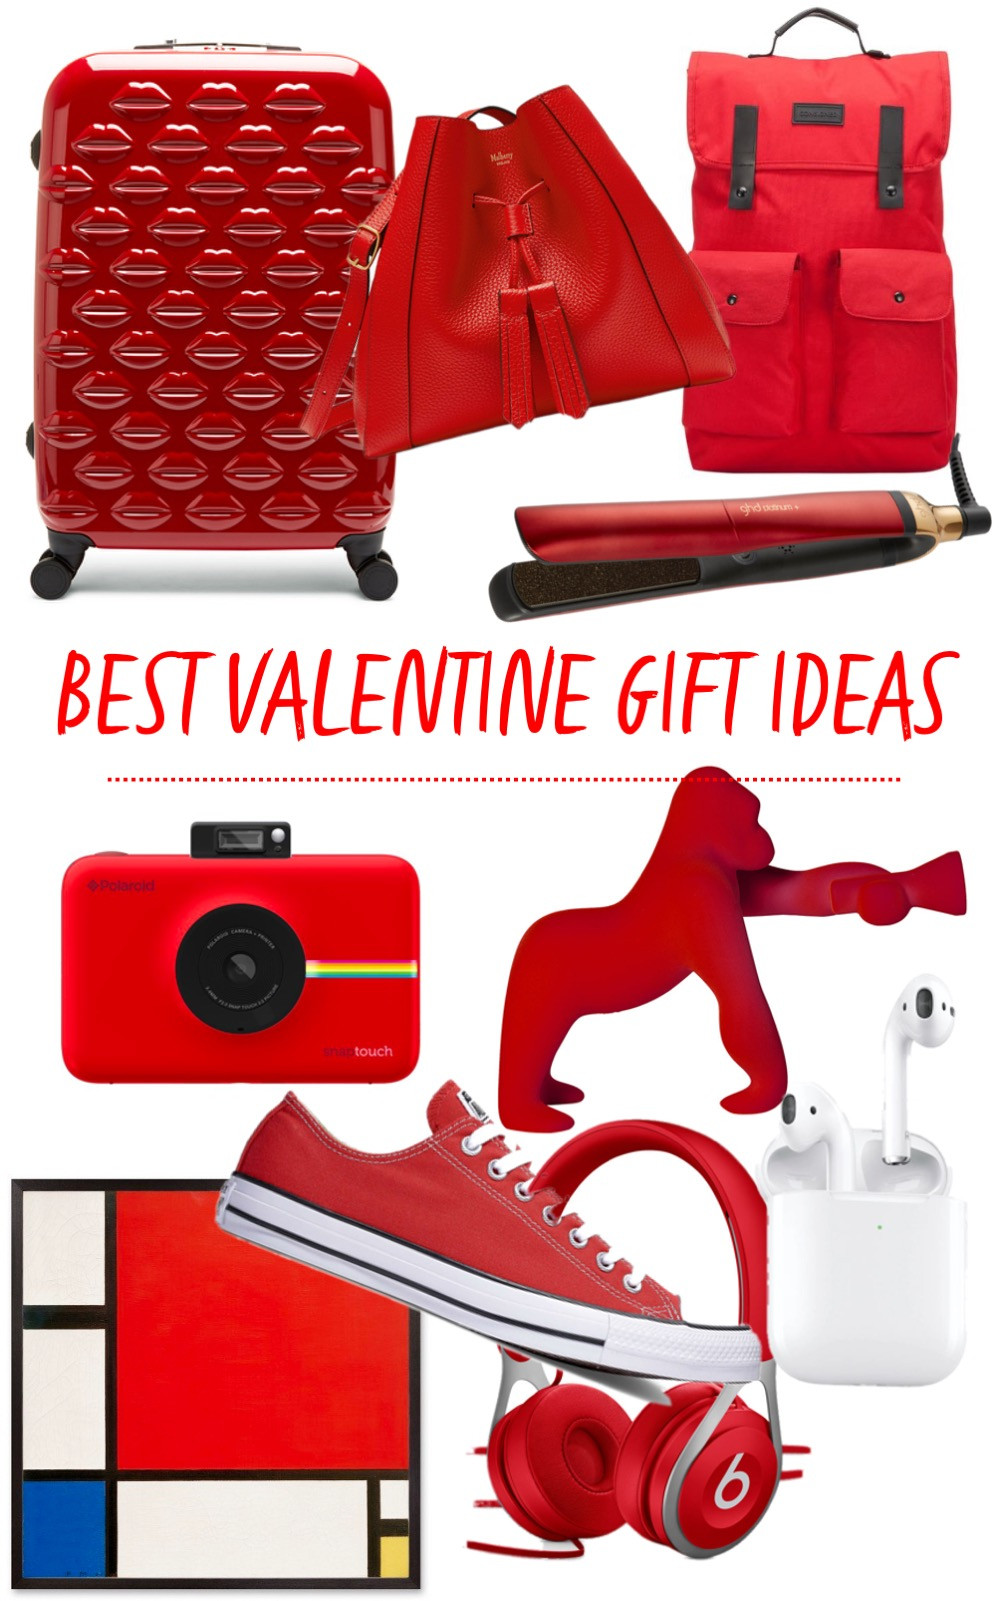 Valentines Gift Ideas 2020
 Best Valentine Gift Ideas 2020